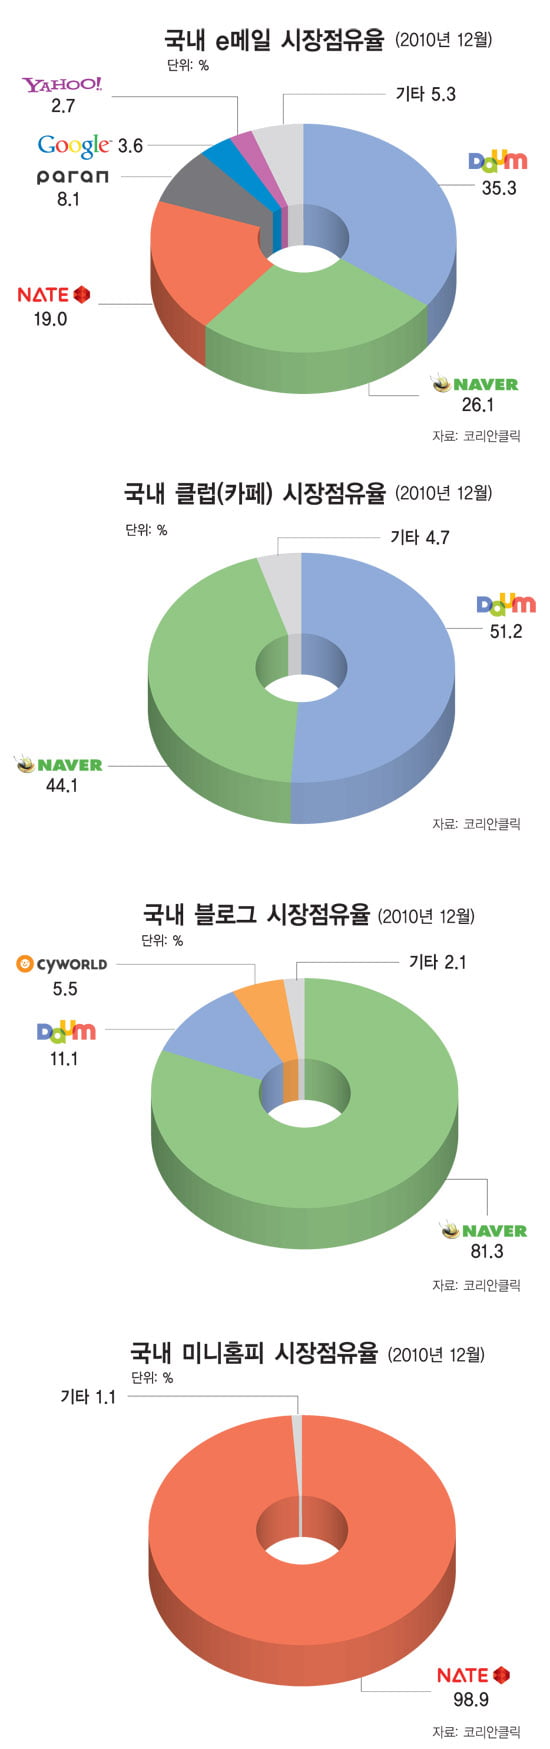 [한눈에 보는 대한민국 산업지도] (32) 인터넷 포털